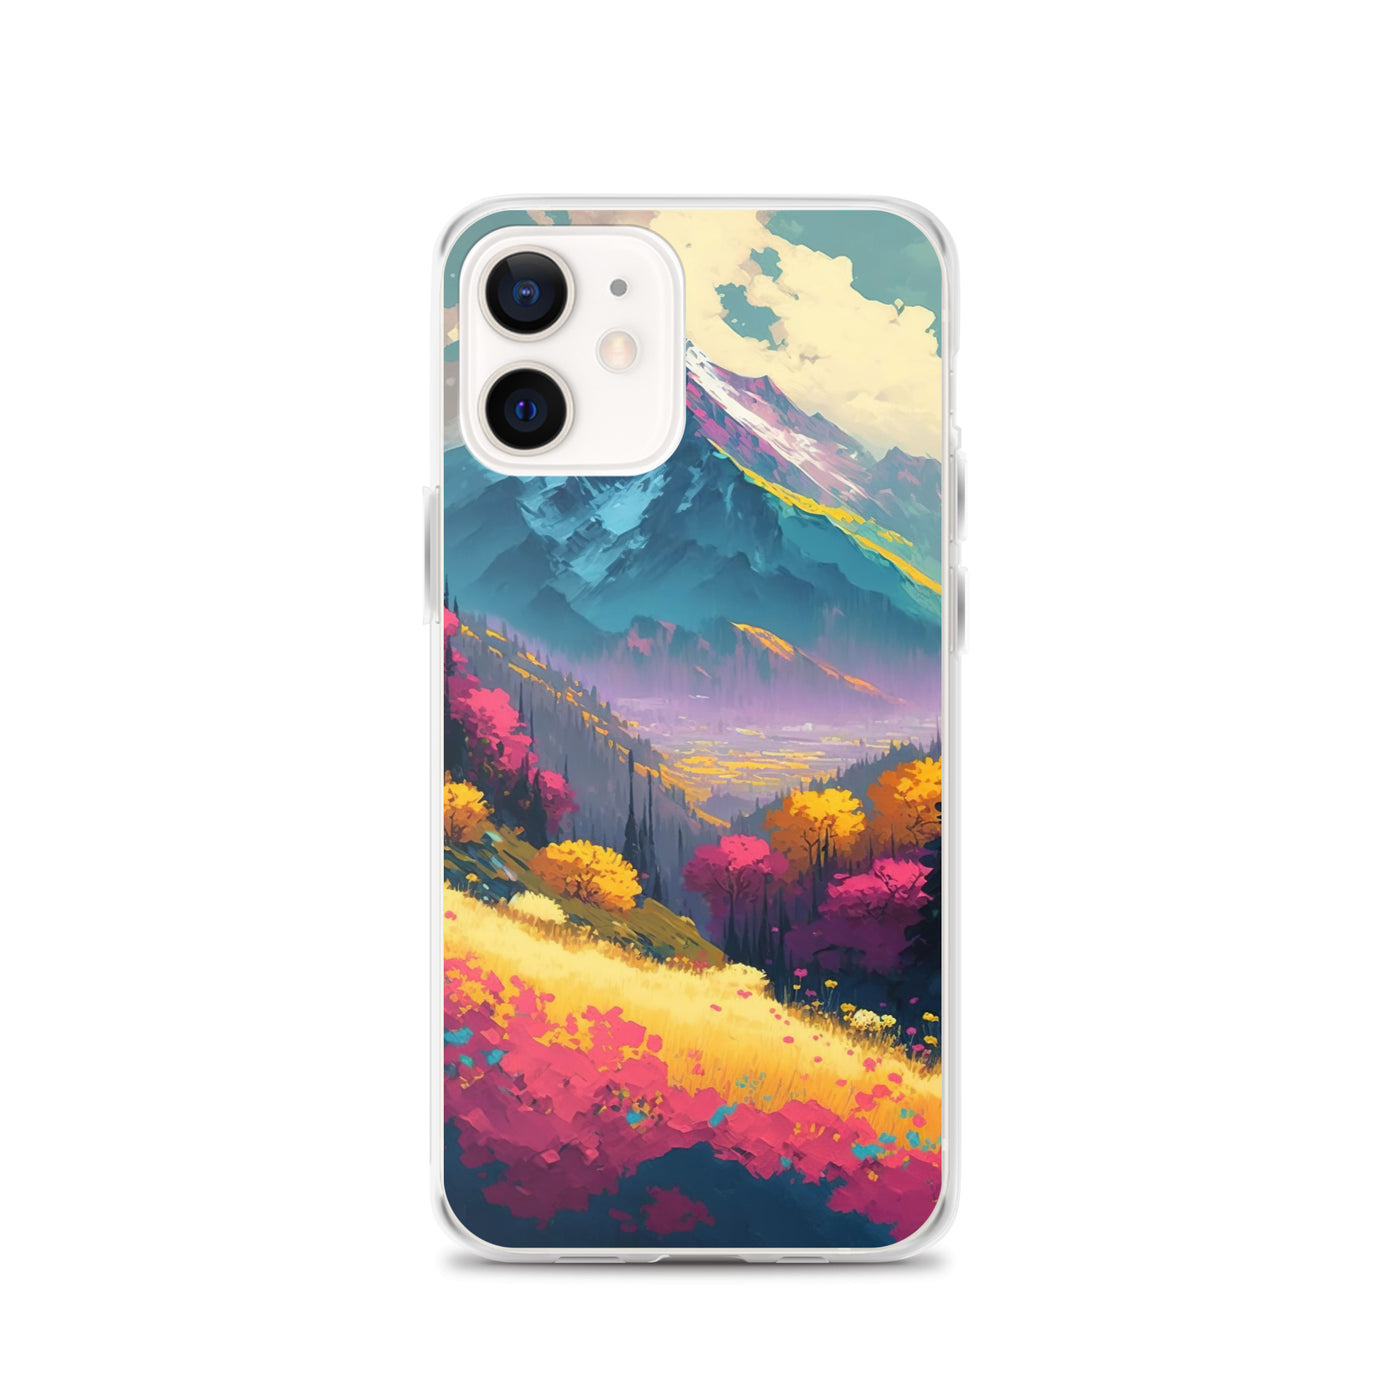 Berge, pinke und gelbe Bäume, sowie Blumen - Farbige Malerei - iPhone Schutzhülle (durchsichtig) berge xxx iPhone 12